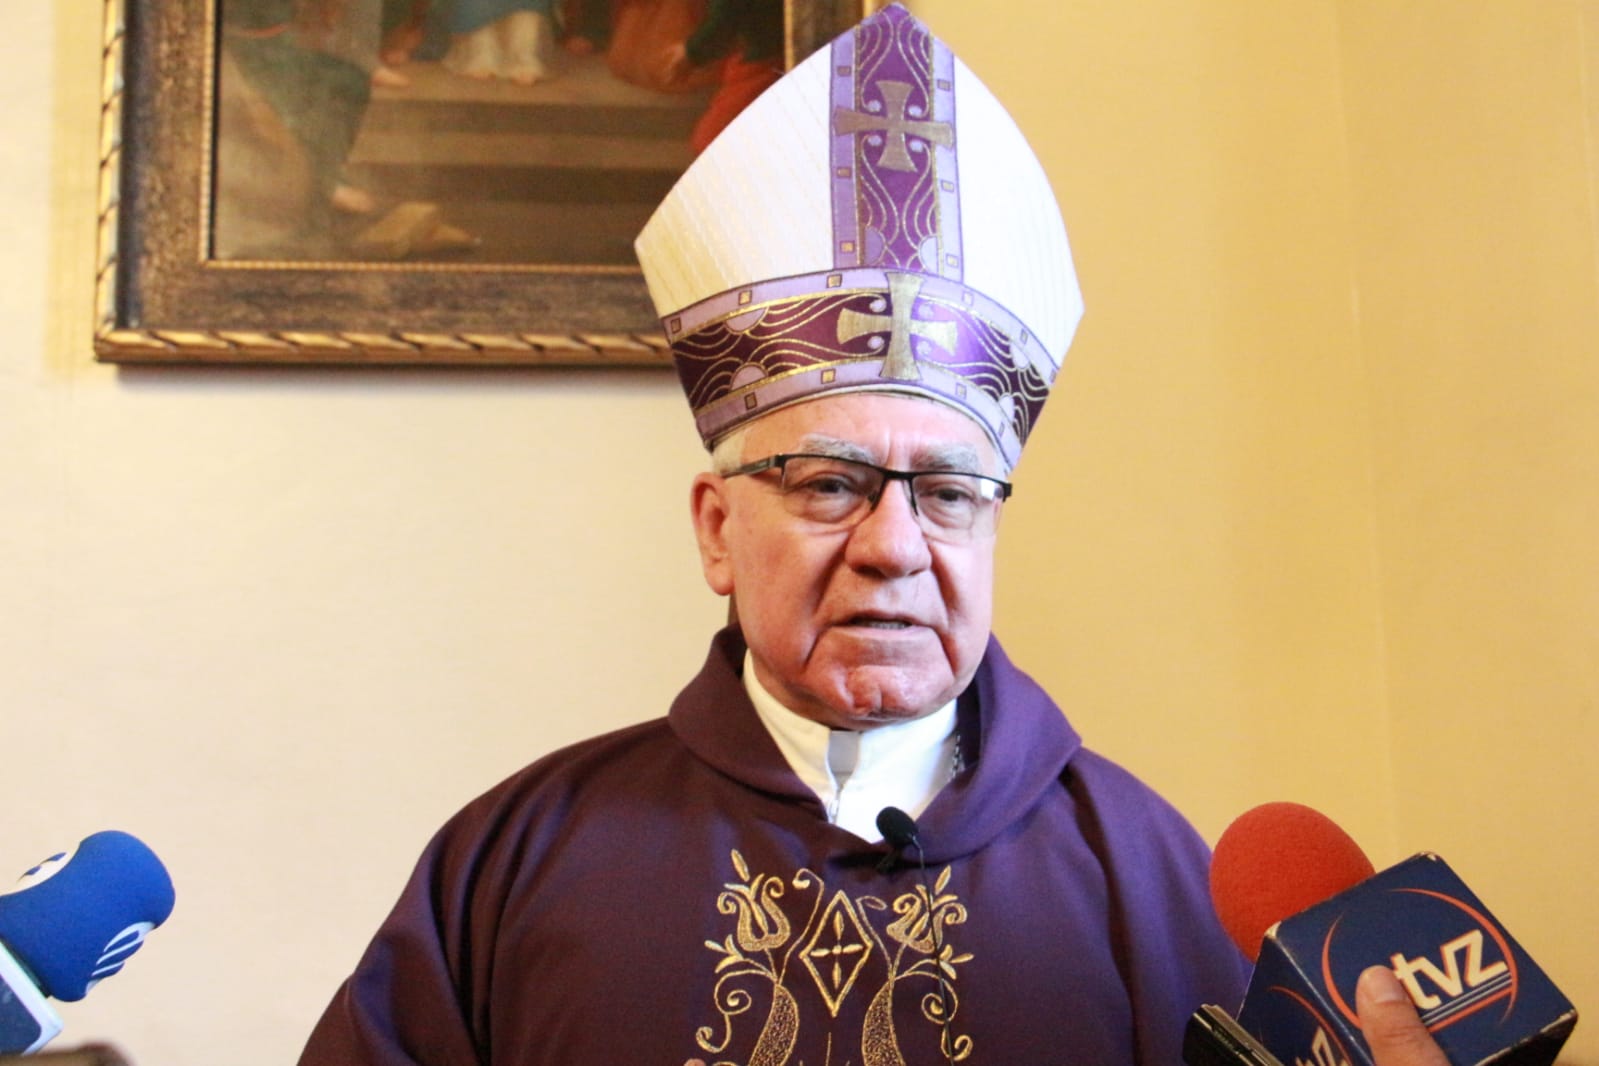 Restos de cardenal Lozano Barragán llegan mañana viernes a Zamora para ser sepultados